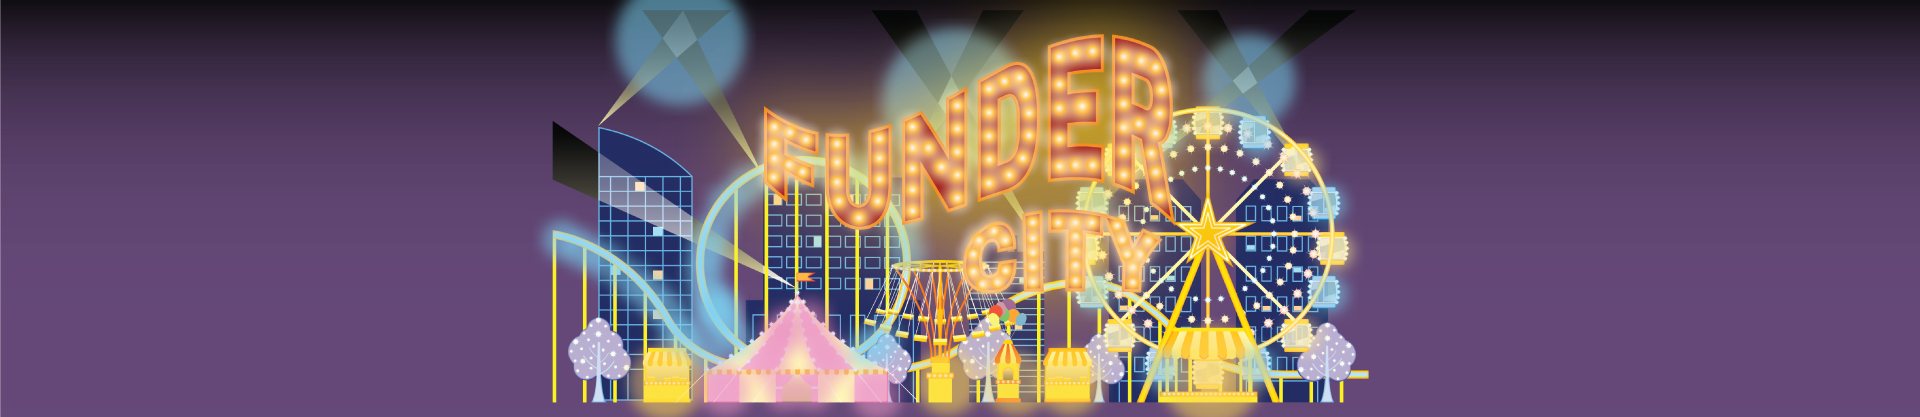 Funder-City-Logo-V2(1920px-w)